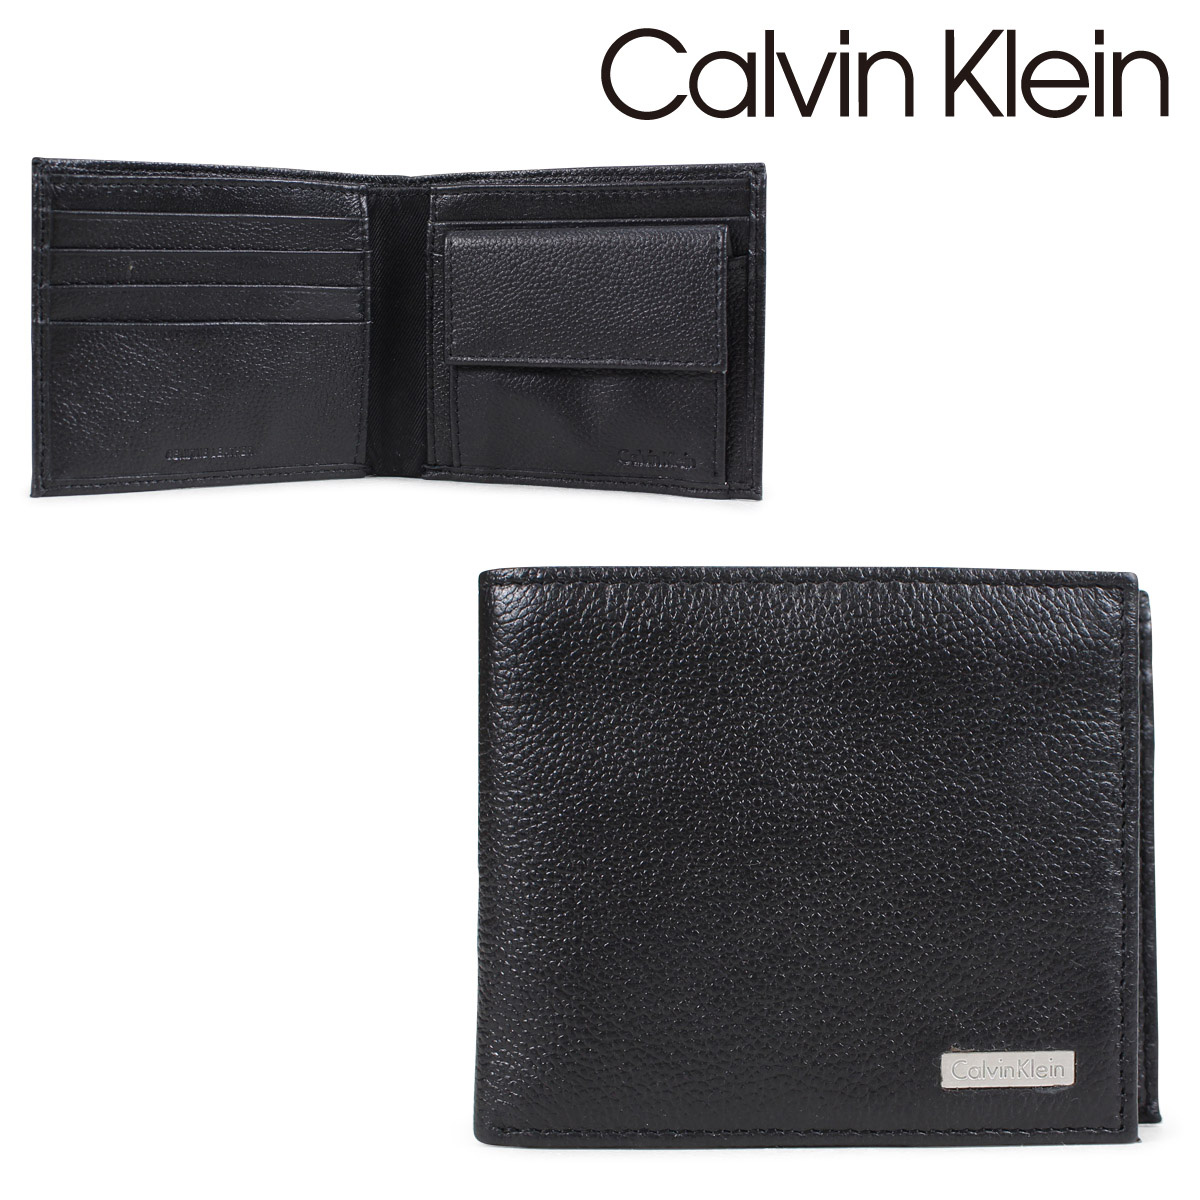 calvin klein wallet white